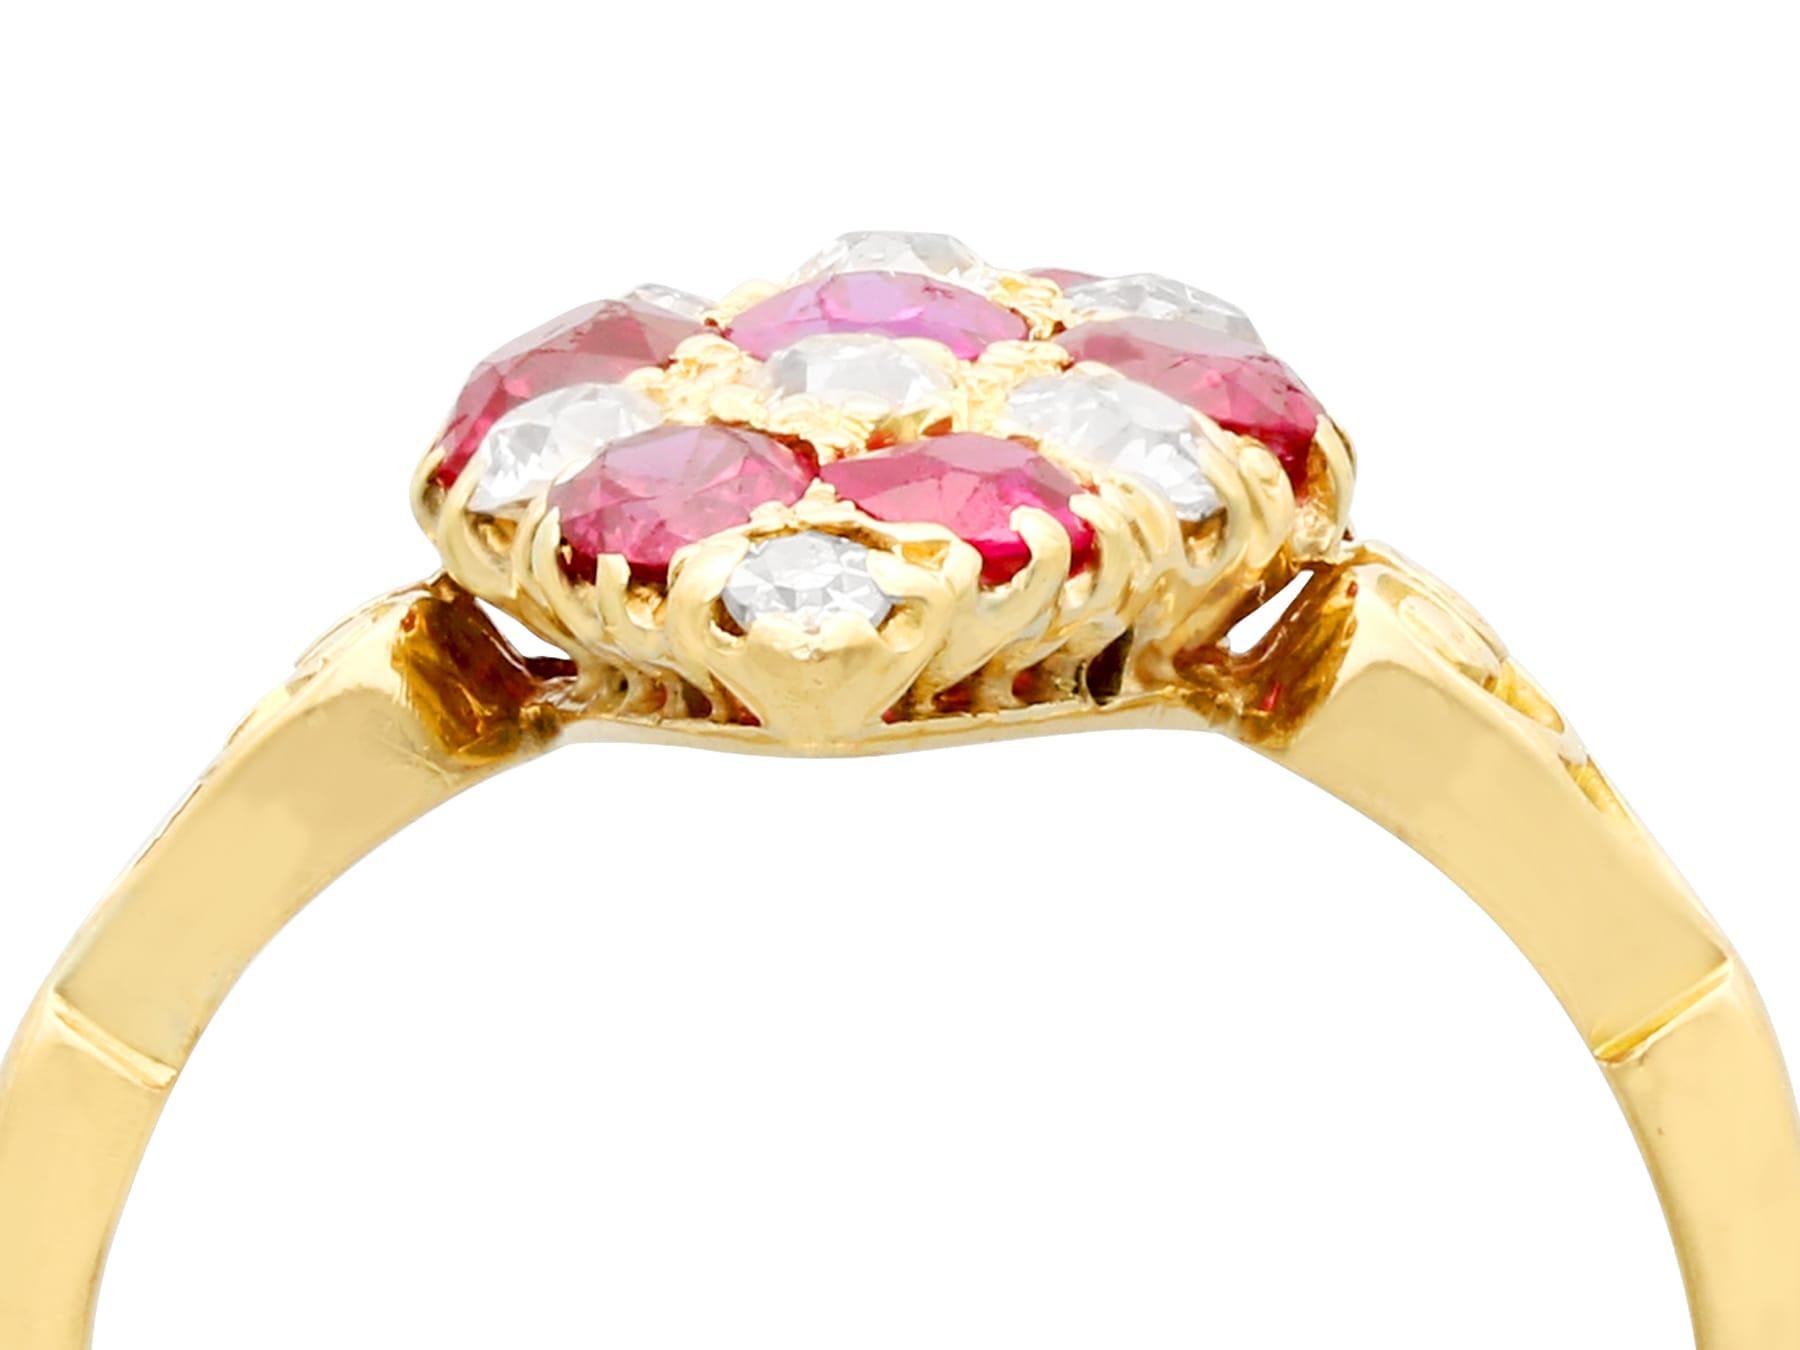 Eine atemberaubende antike 1,82 Ct Rubin und 0,57 Ct Diamant, 18k Gelbgold Marquise Ring; Teil unserer vielfältigen antiken Schmuck und Estate Jewelry Sammlungen.

Dieser atemberaubende, feine und beeindruckende antike Rubin- und Diamantring wurde